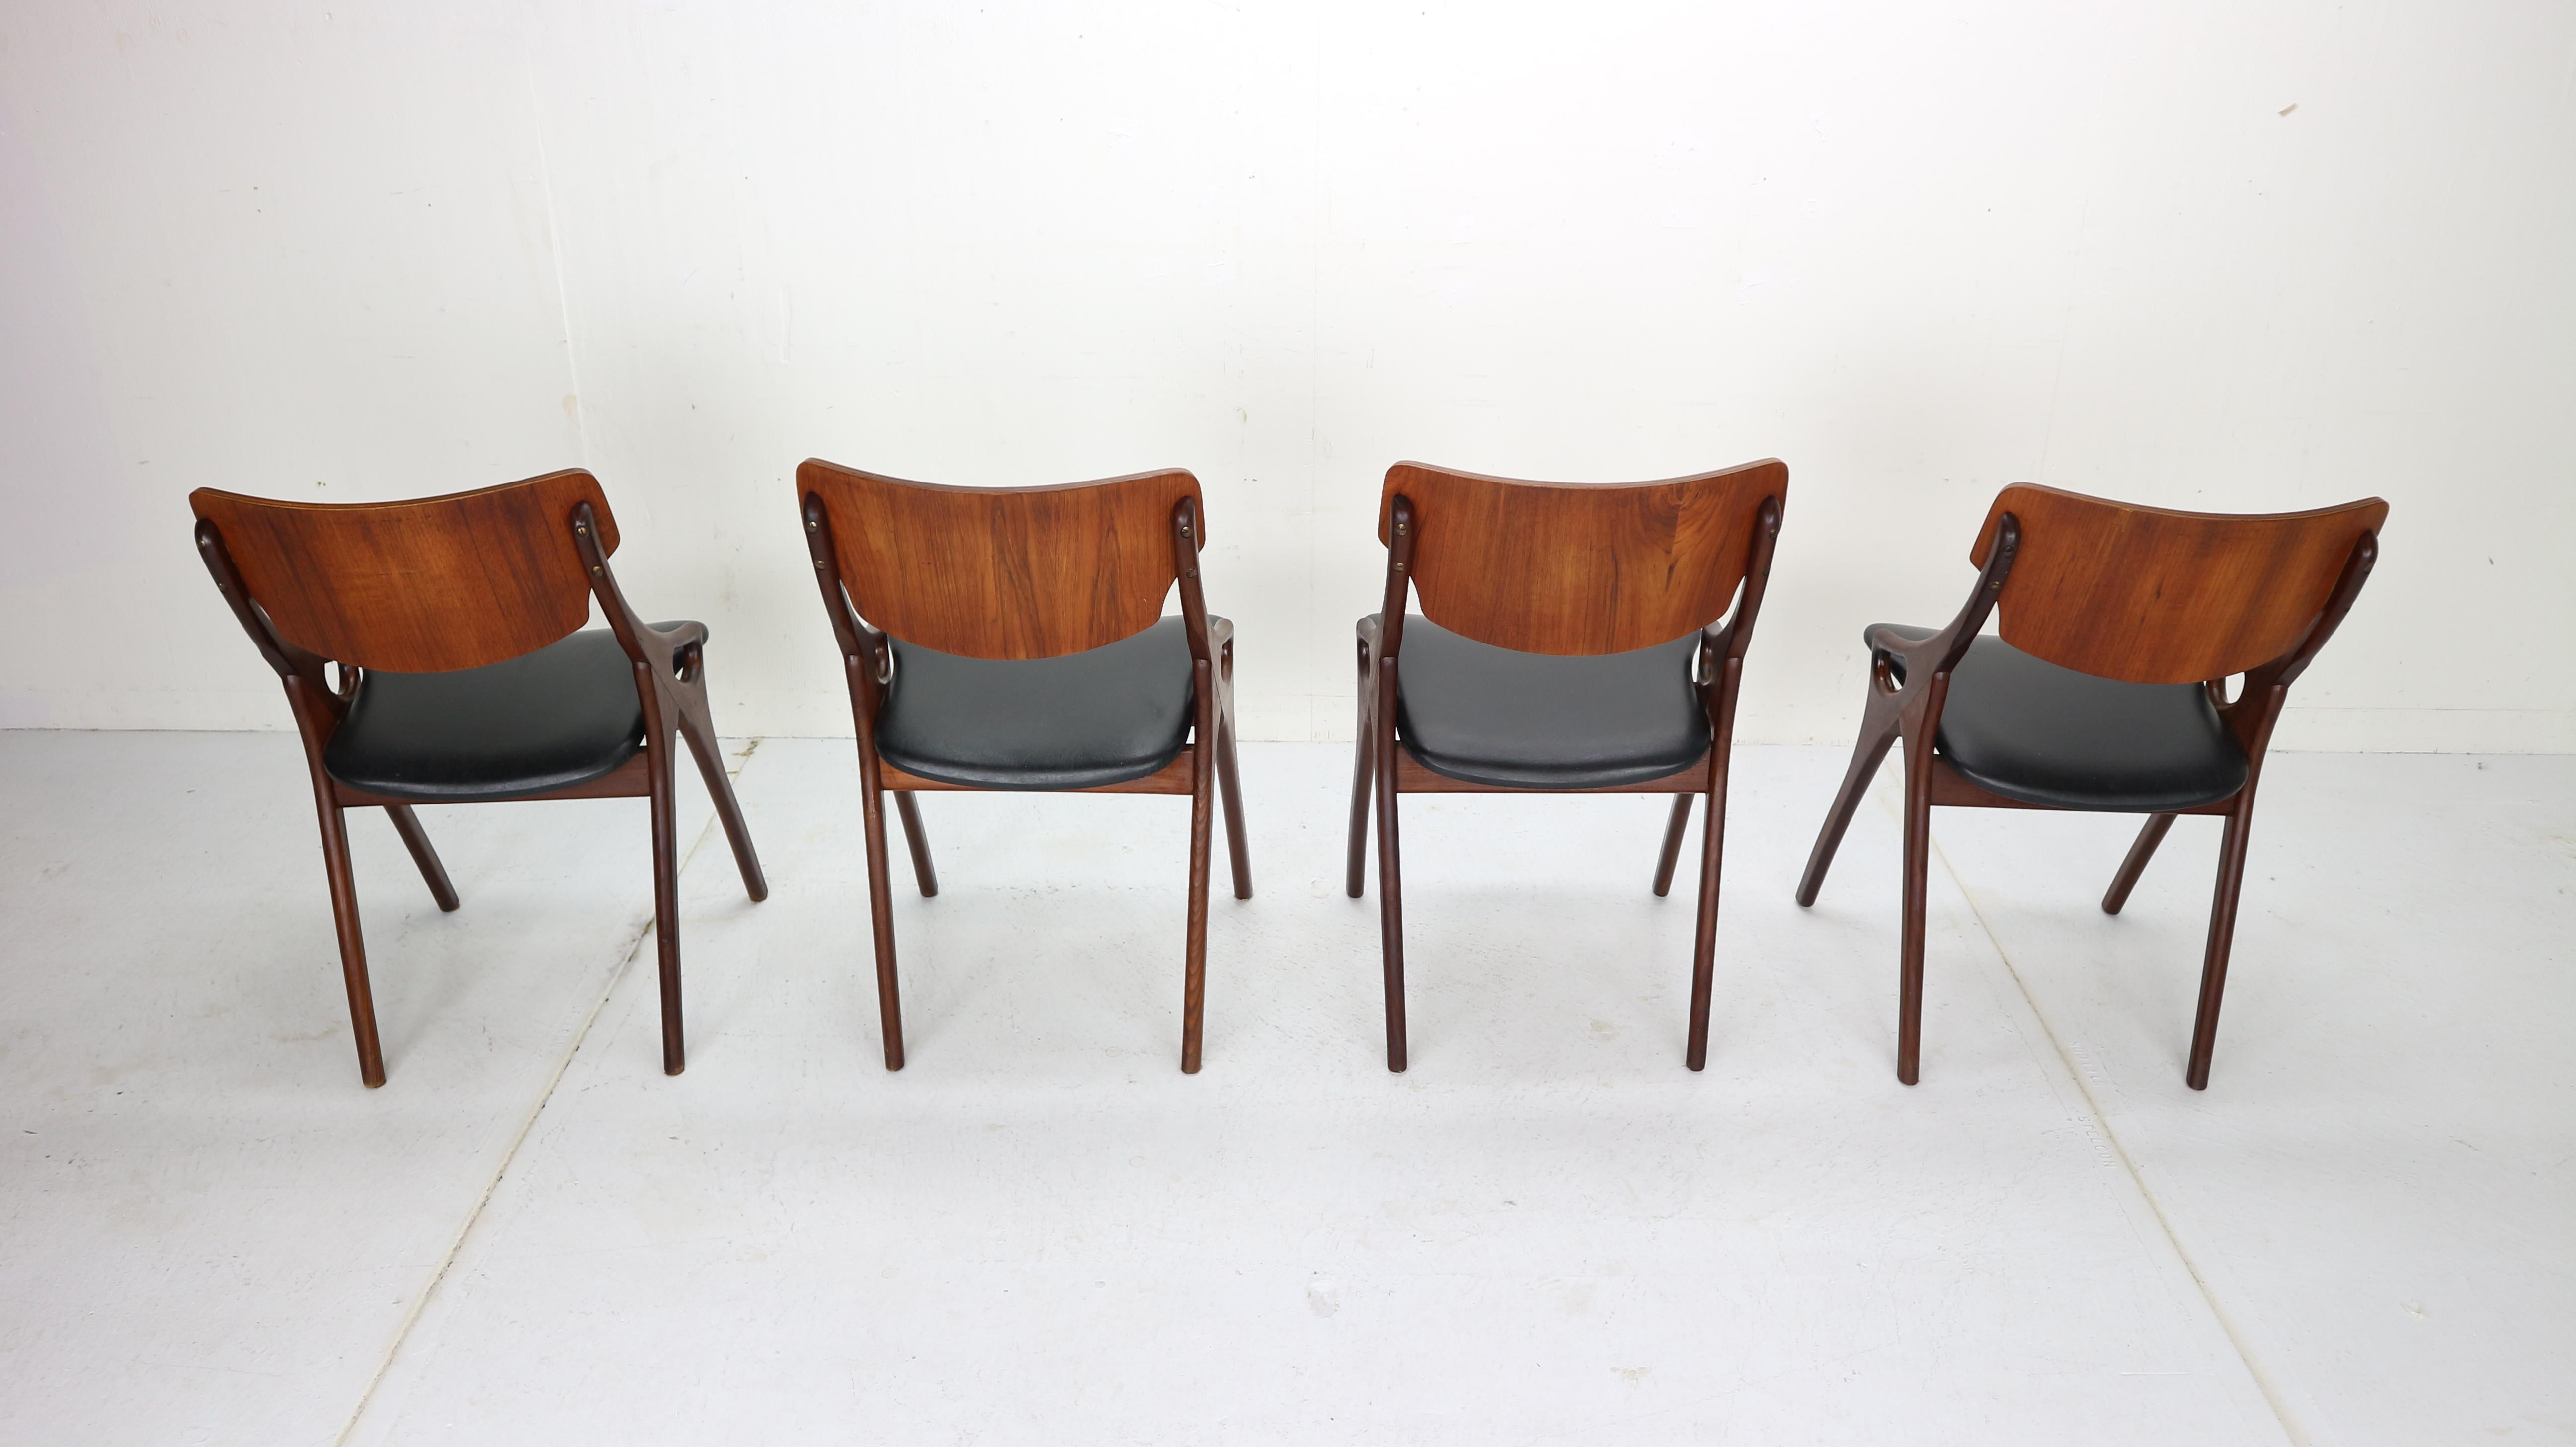 Faux Leather Set of 4 Arne Hovmand Olsen for Mogens Kold Dining Room Chairs, 1960s Denmark